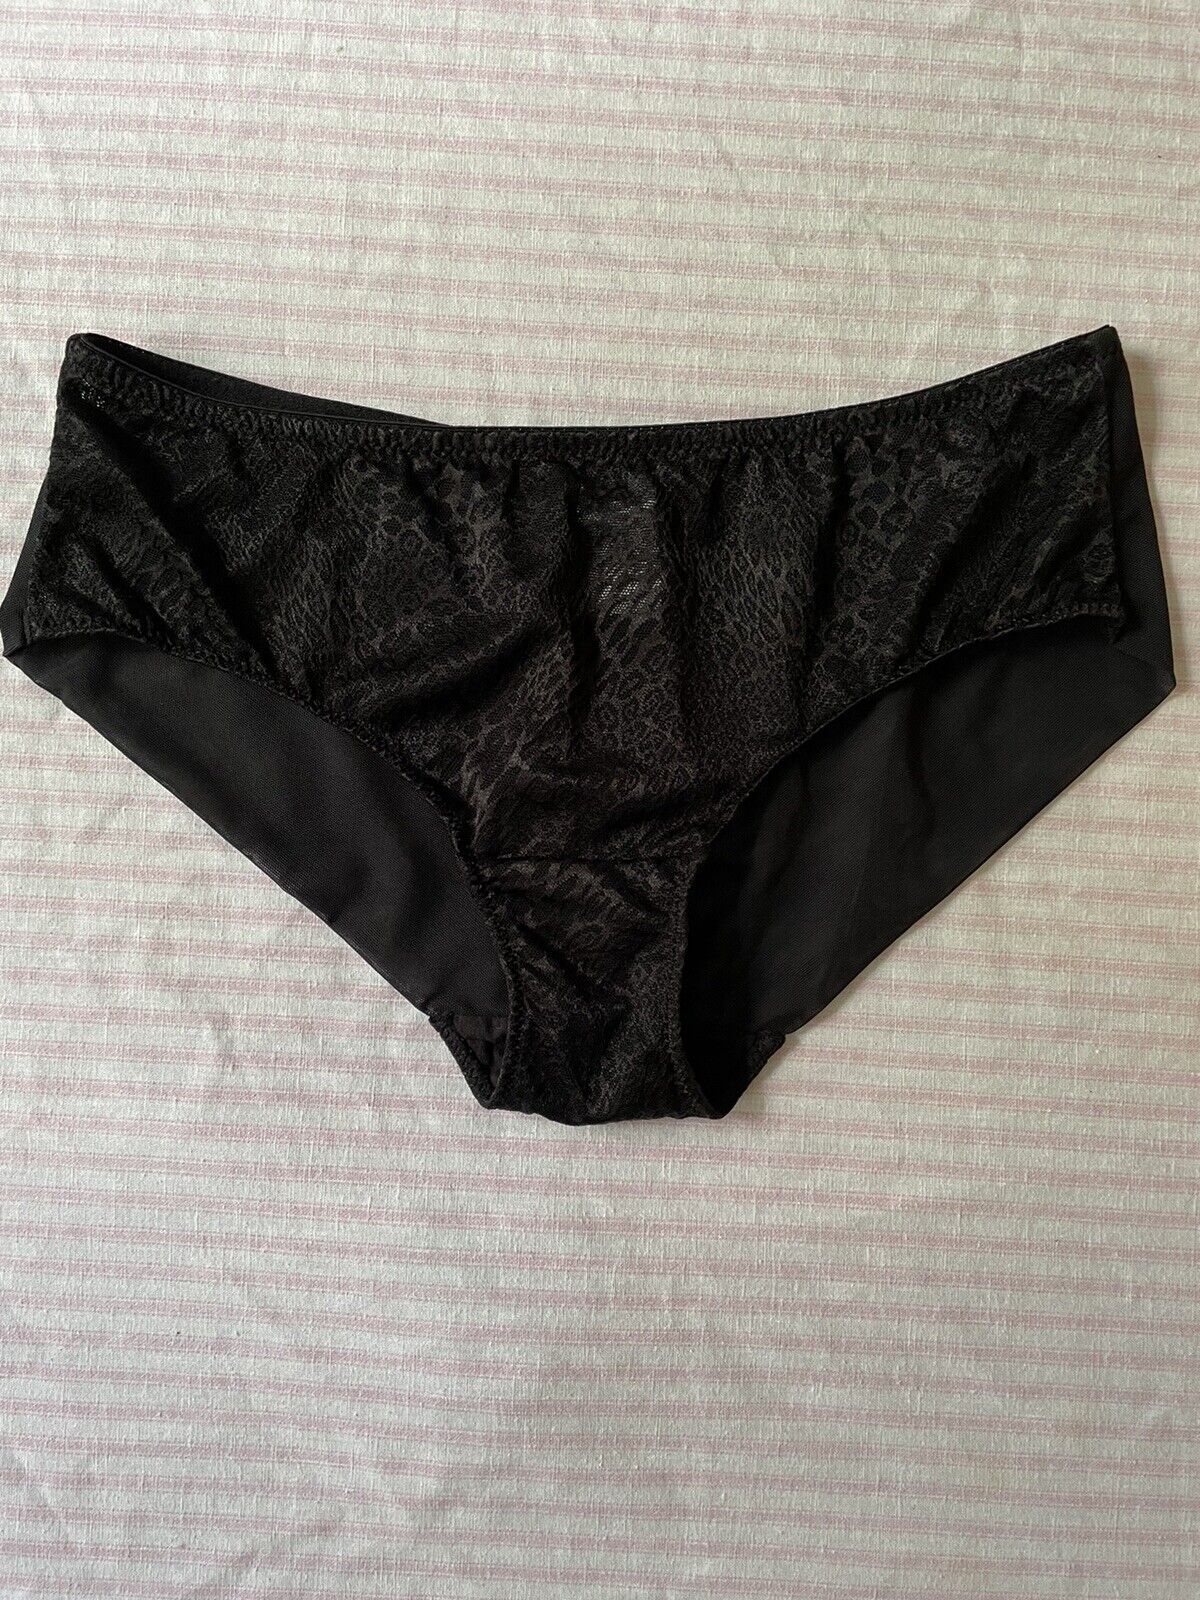 vintage 90s y2k black lace sheer panties boyshort siz… - Gem